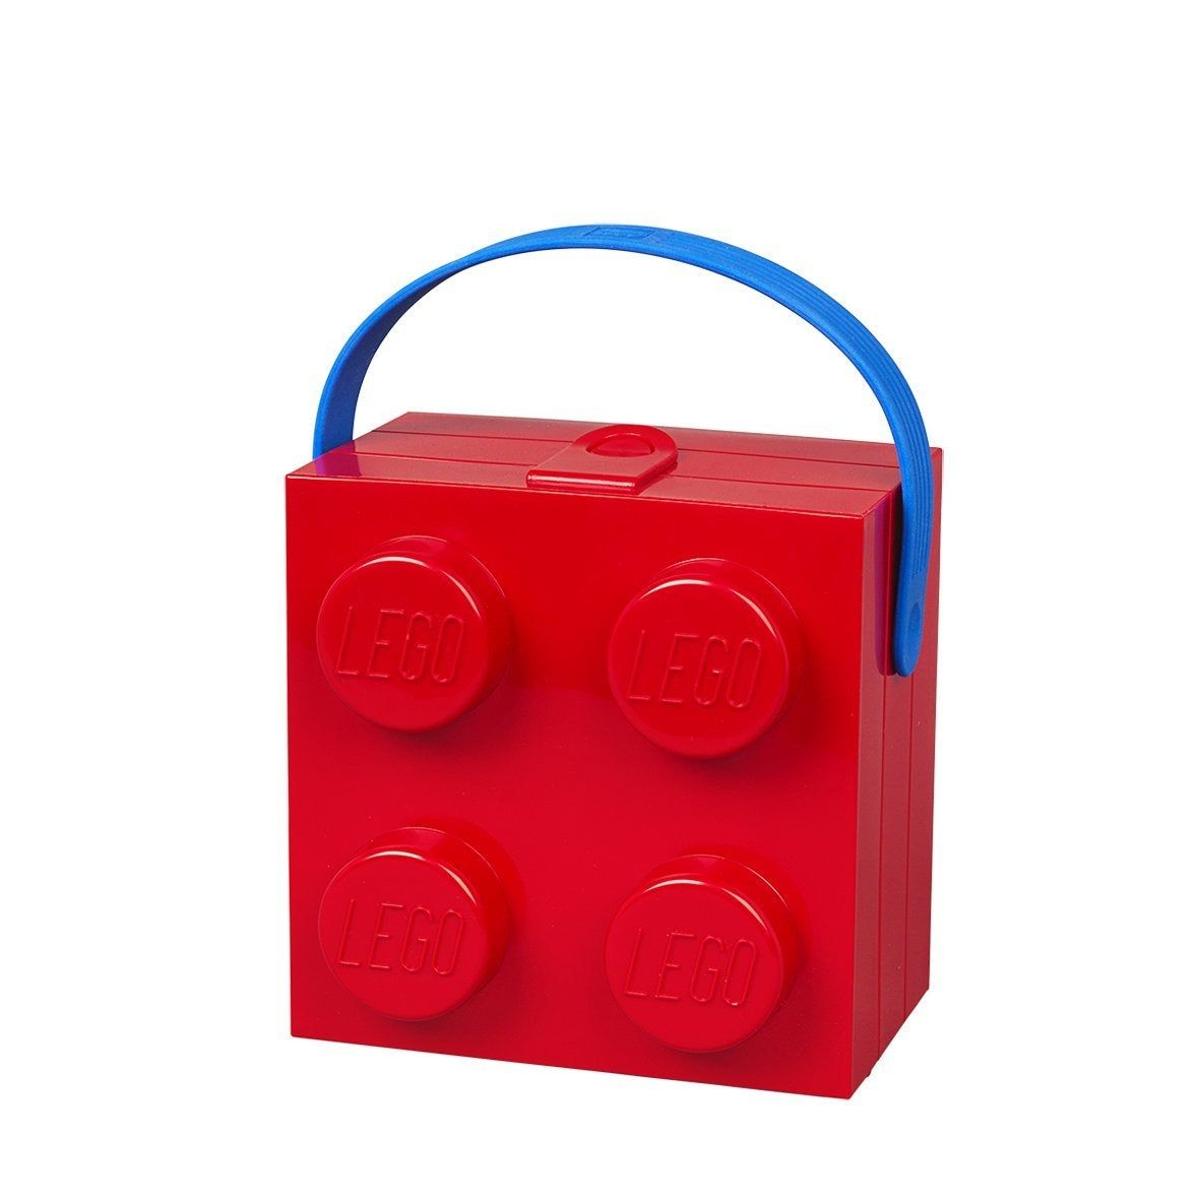 Caja para la comida de Lego (Precio: 15,20 euros)